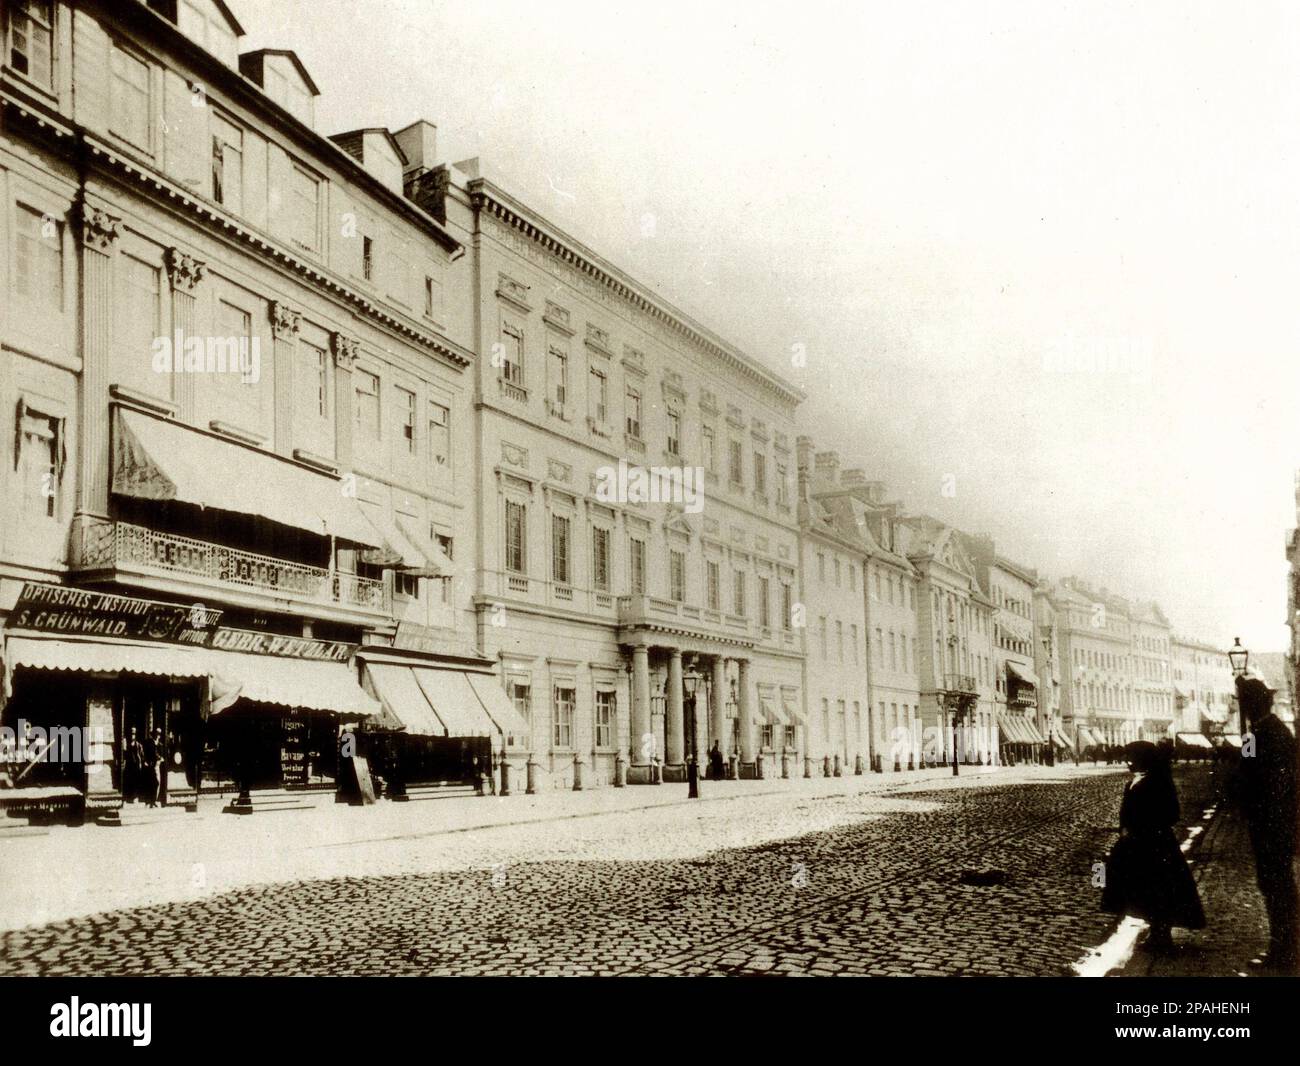 1875 : FRANKFURT AM MAIN , Germany :  Das Hotel Russischer Hof auf der Zeil, erbaut von Nicolas de Pigage 1794, abgerissen 1891 für den Neubau der Kaiserlichen Hauptpost. Photo by Carl Friedrich Mylius - Hotel de Russie - GERMANIA - GEOGRAFIA - GEOGRAPHY - FOTO STORICHE - HISTORY PHOTOS -   - ARCHITETTURA - ARCHITECTURE - ARCHITECTURAL - FRANCOFORTE ---- Archivio GBB Stock Photo